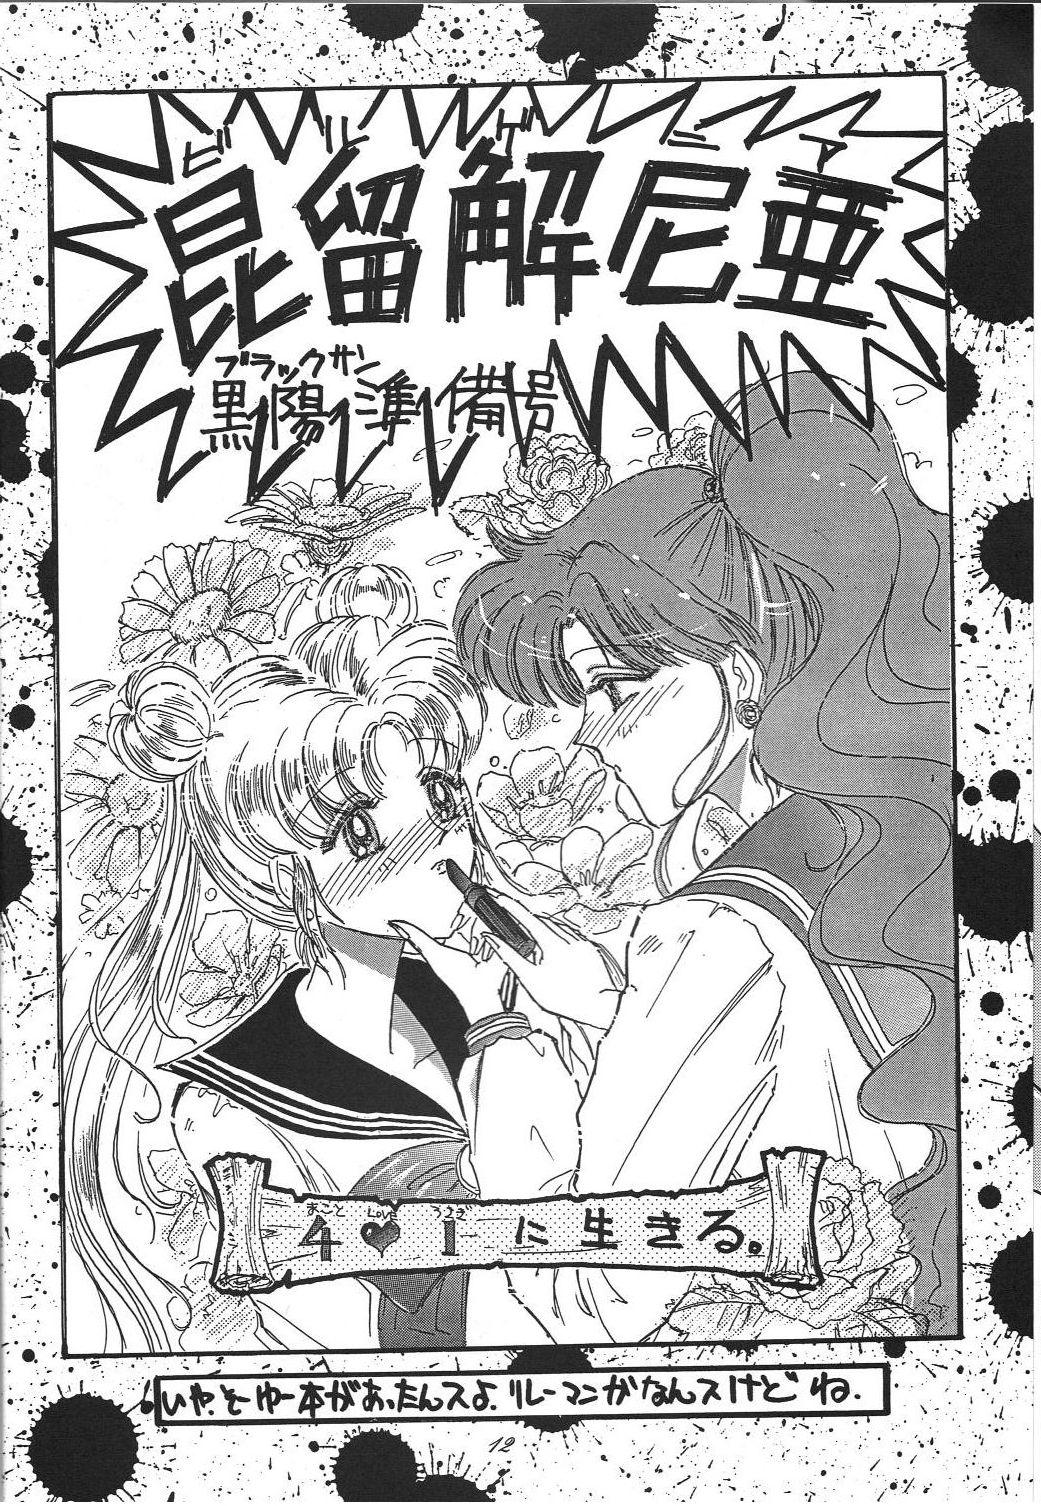 Puto Kaishaku 6 Seppuku Keikaku – Sailor moon Ah my goddess Rubdown - Chapter 11